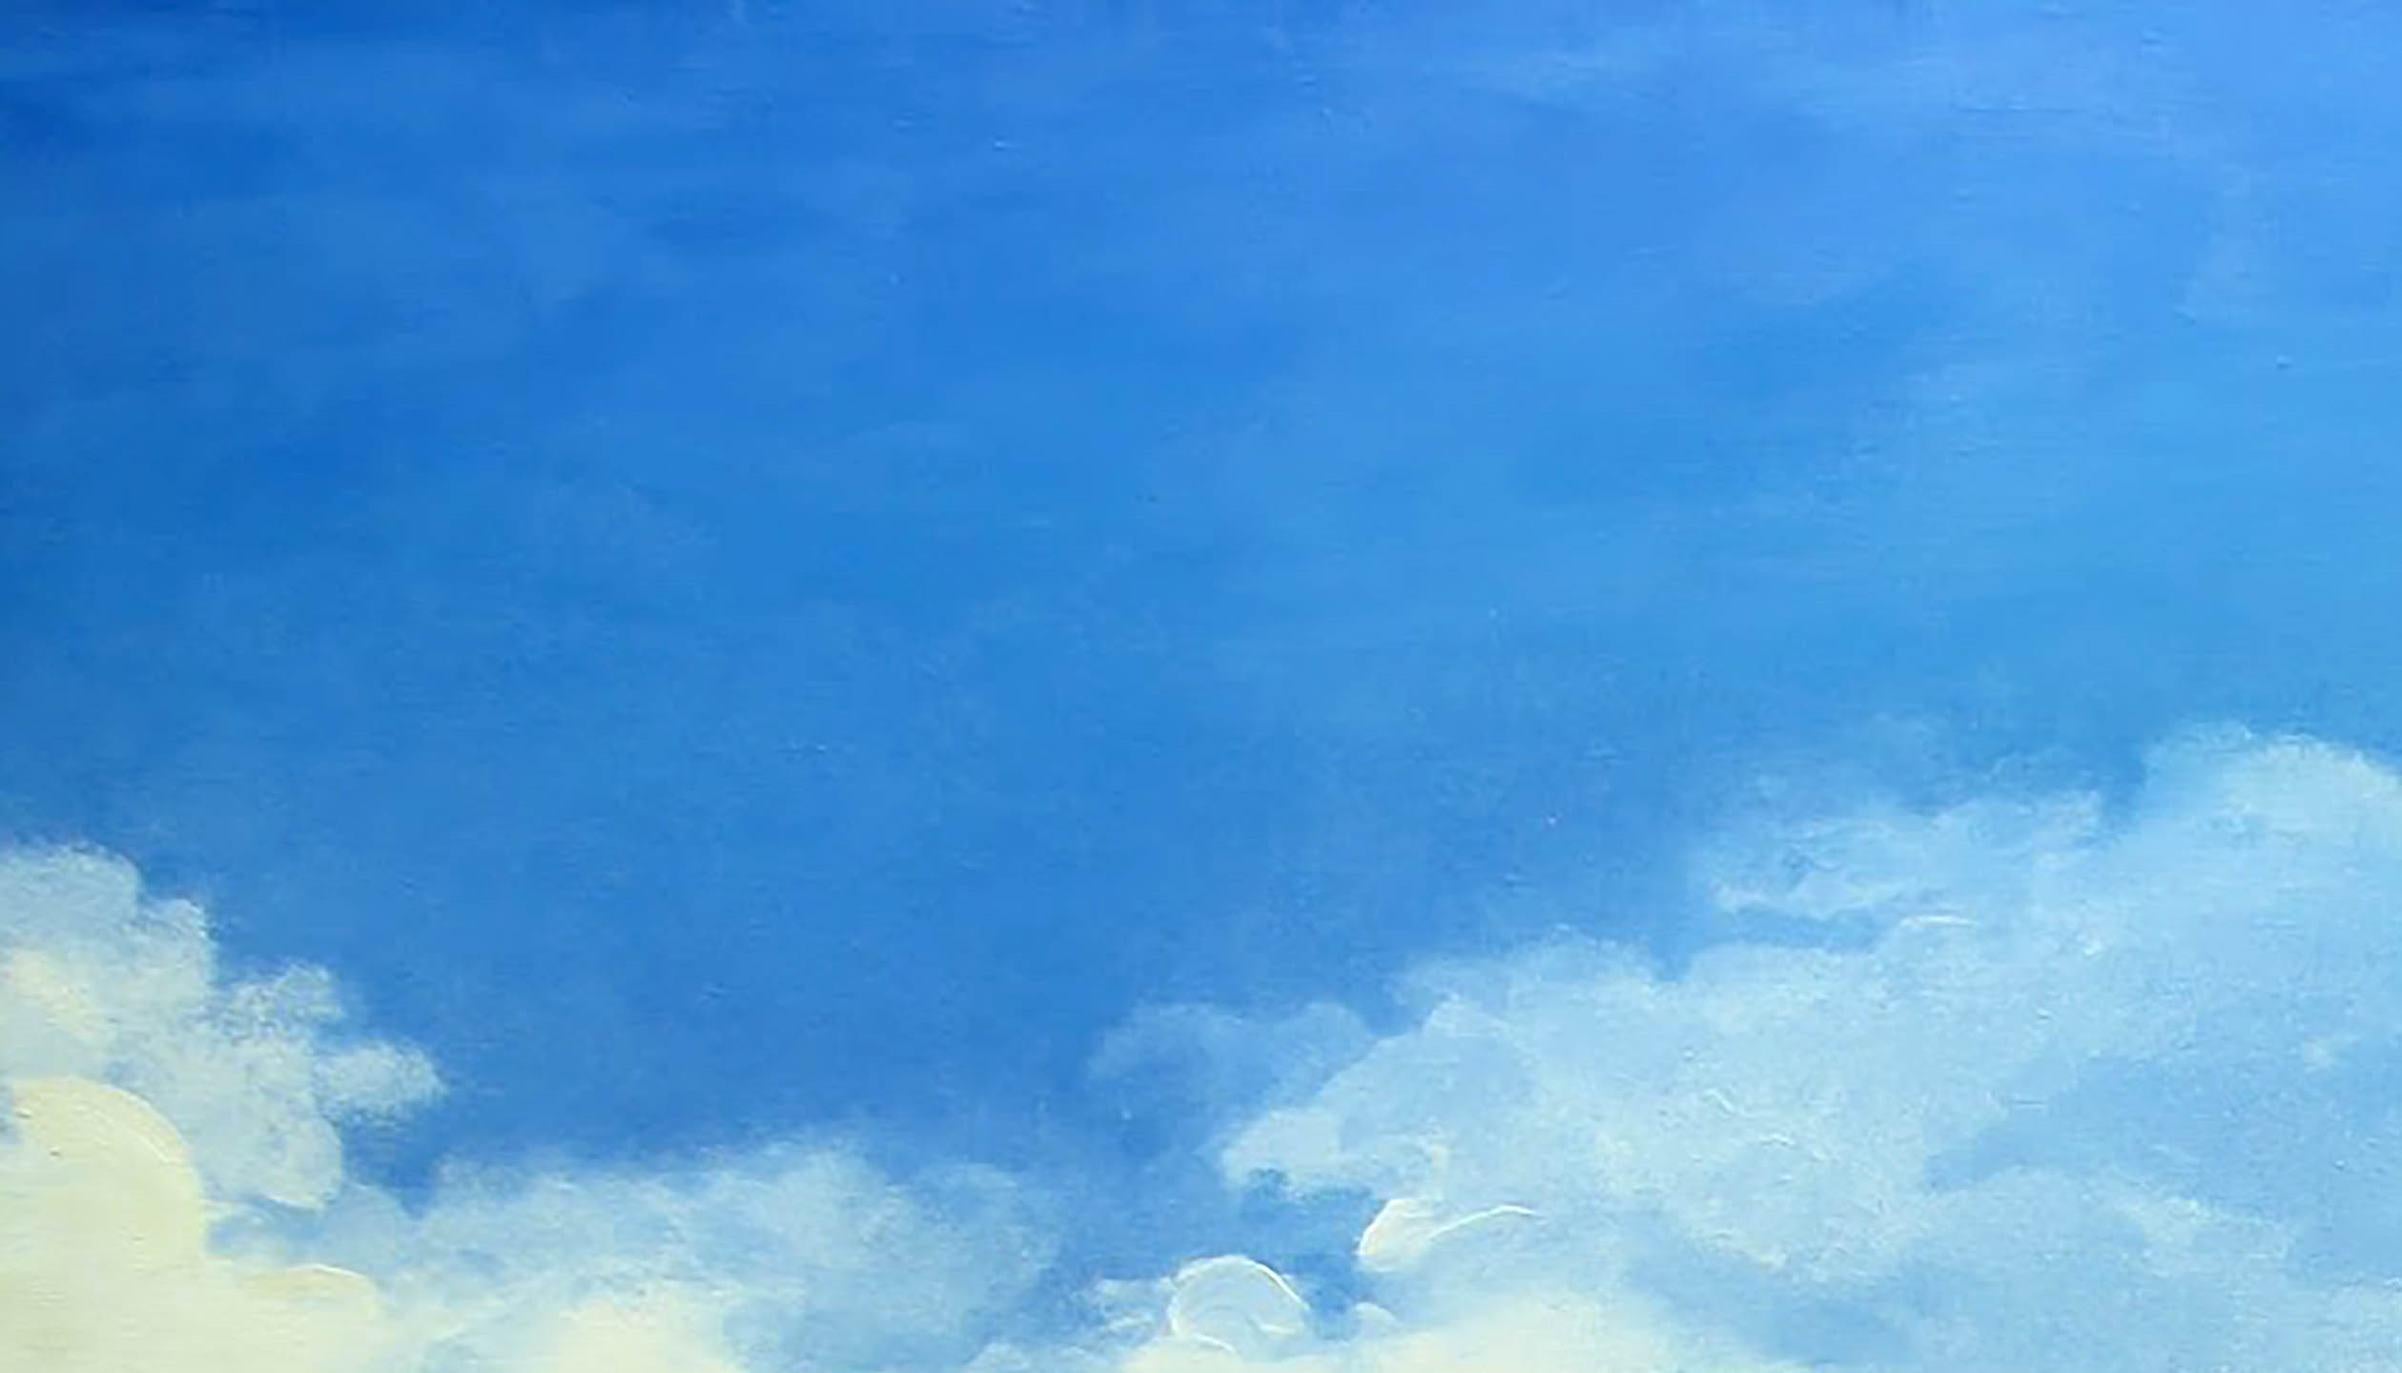 Künstler: Warwarow Anatoli Viktorowitsch
Titel: Unabhängig,
Größe: 39,5x59 Zoll, (100x150 cm)
Medium: Öl auf Leinwand
Handbemalt, original, einzigartig.

Dieses unglaubliche Ölgemälde zeigt einen auffliegenden Adler vor einem strahlend blauen